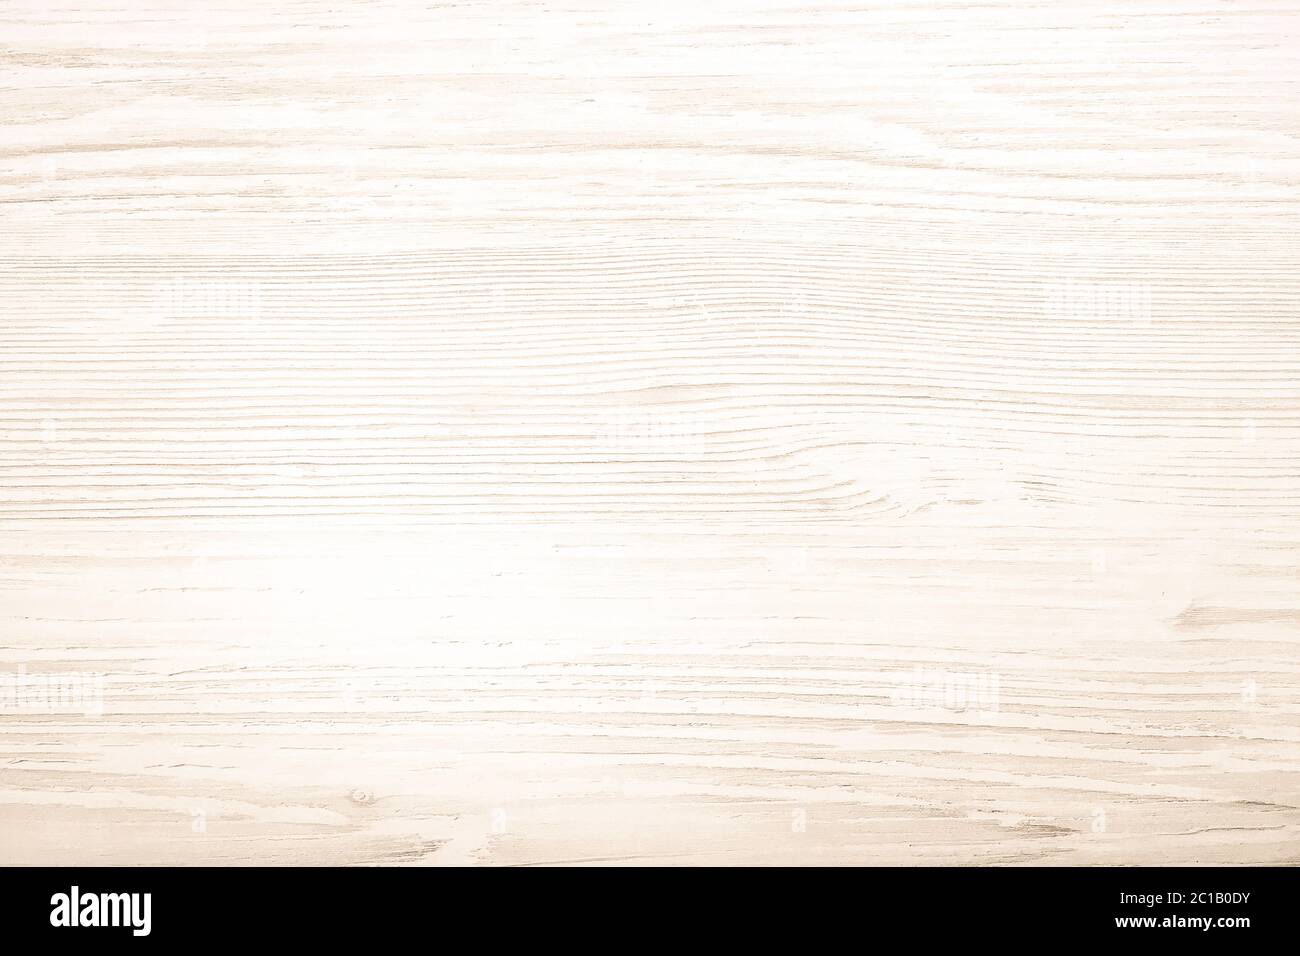 Vân gỗ trắng là điểm nhấn trang trí tuyệt vời cho căn phòng của bạn, mang đến sự thanh lịch và quý phái. Với mỗi chi tiết vân gỗ được thiết kế cẩn thận, bạn sẽ tìm thấy sự kết hợp hoàn hảo giữa nét cổ điển và hiện đại.